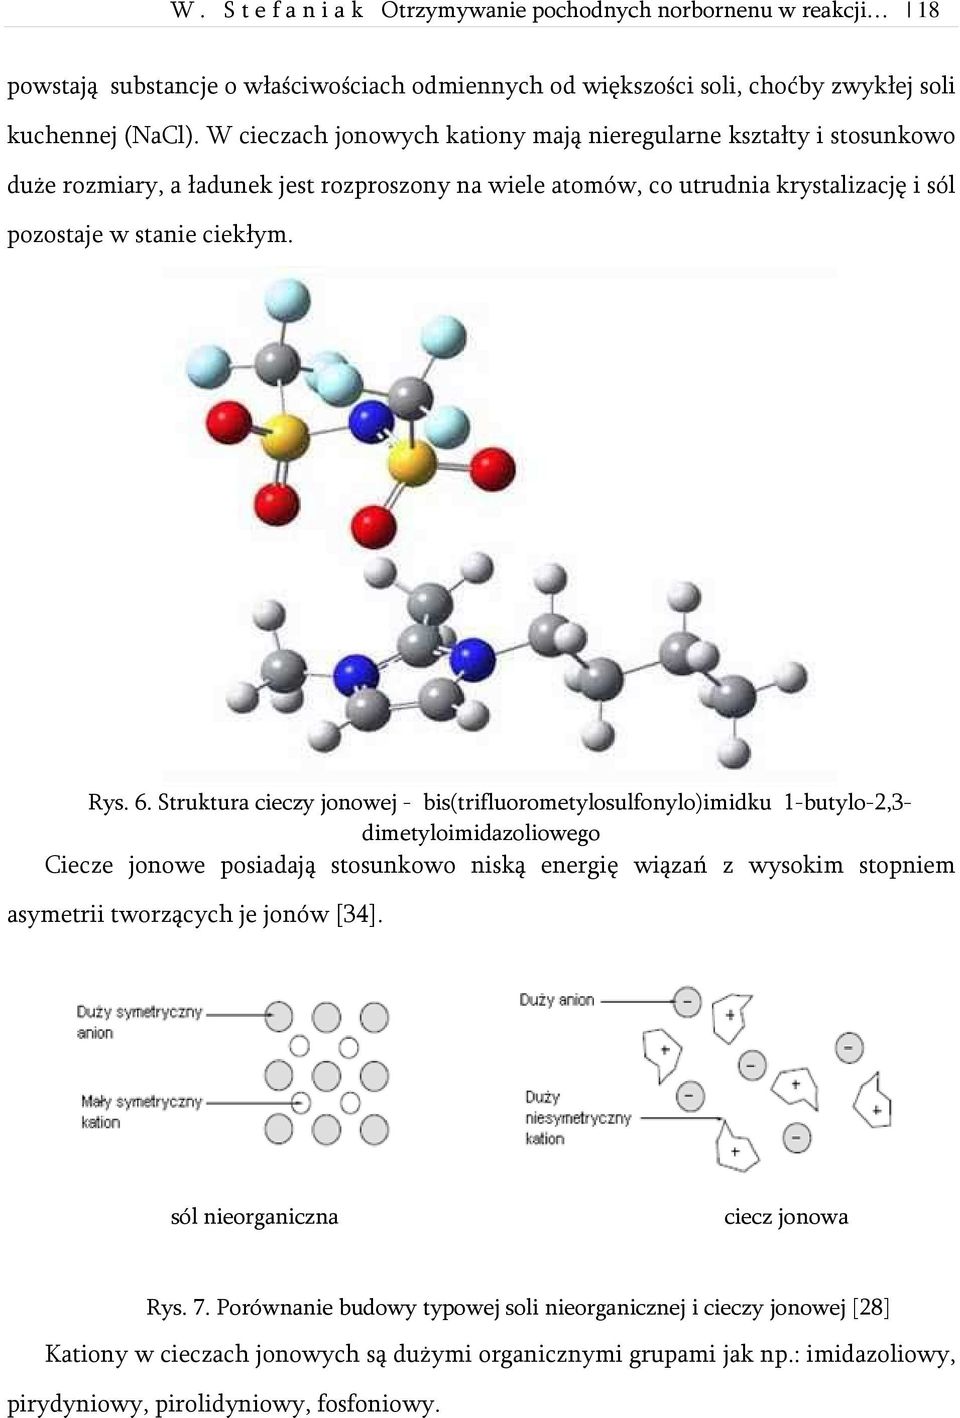 Struktura cieczy jonowej - bis(trifluorometylosulfonylo)imidku 1-butylo-2,3- dimetyloimidazoliowego Ciecze jonowe posiadają stosunkowo niską energię wiązań z wysokim stopniem asymetrii tworzących je